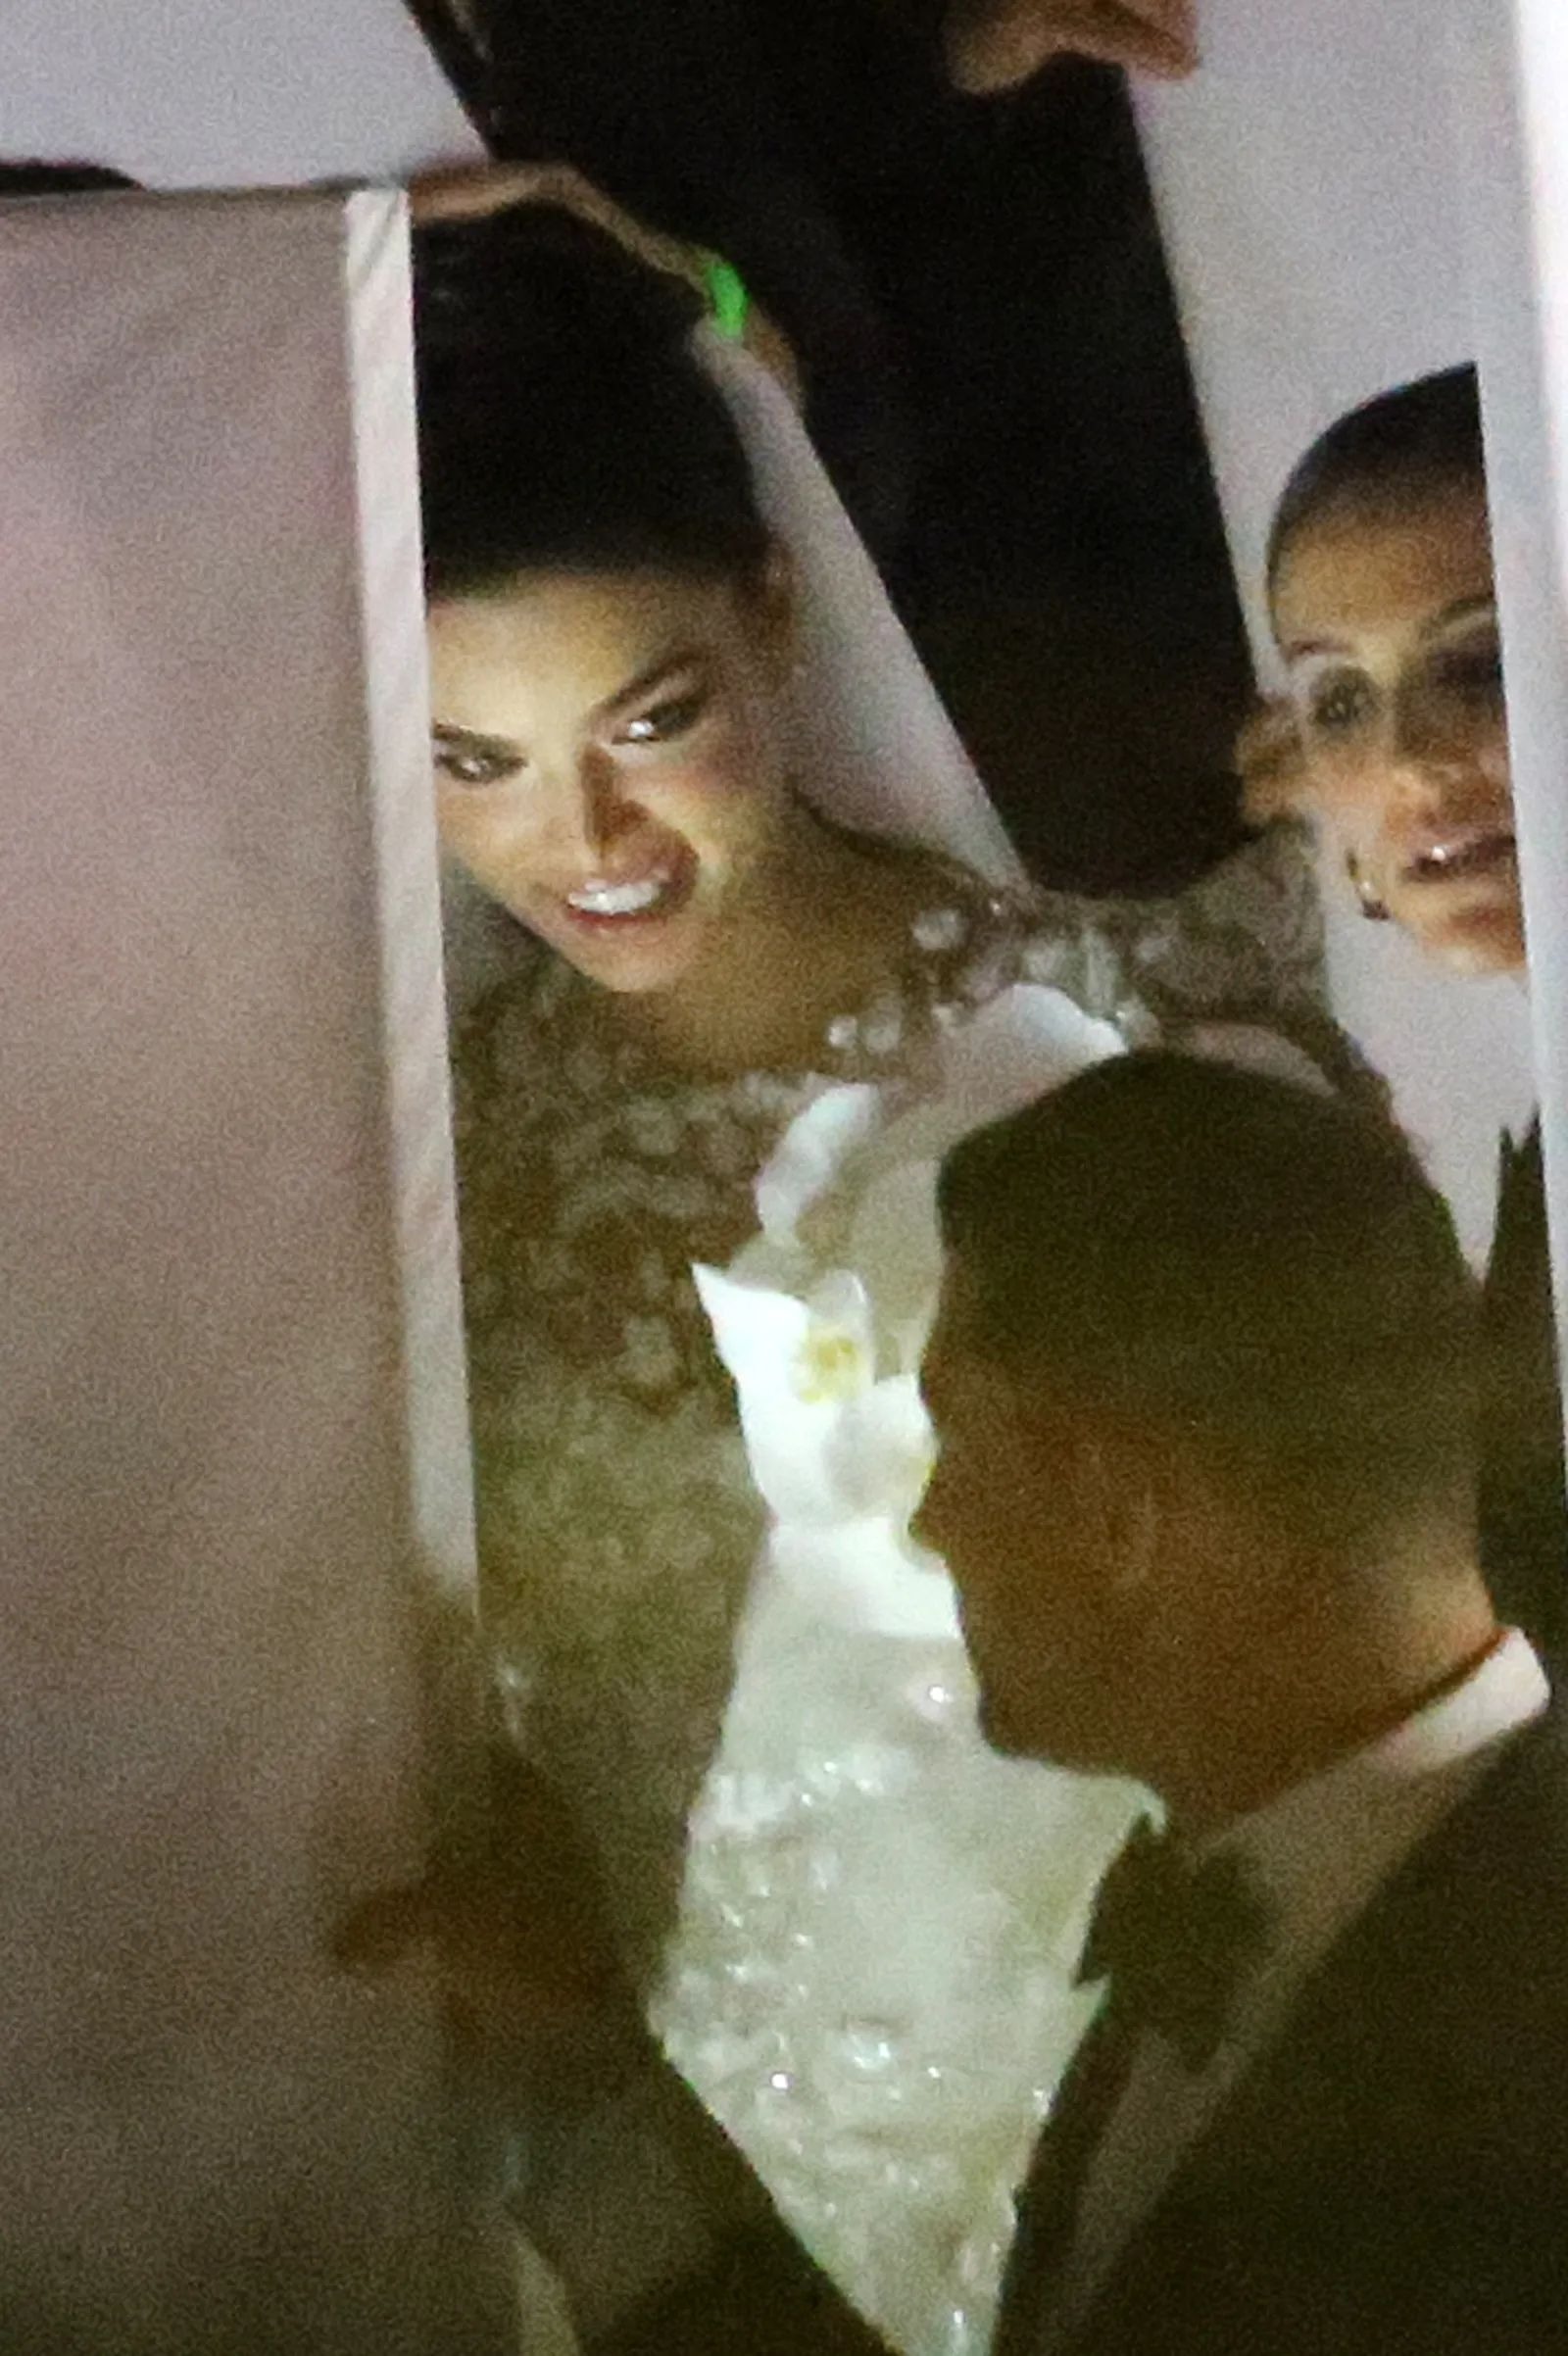 Boda de Marc Anthony y Nadia Ferreria: Primeras imágenes del vestido de novia y famosos invitados